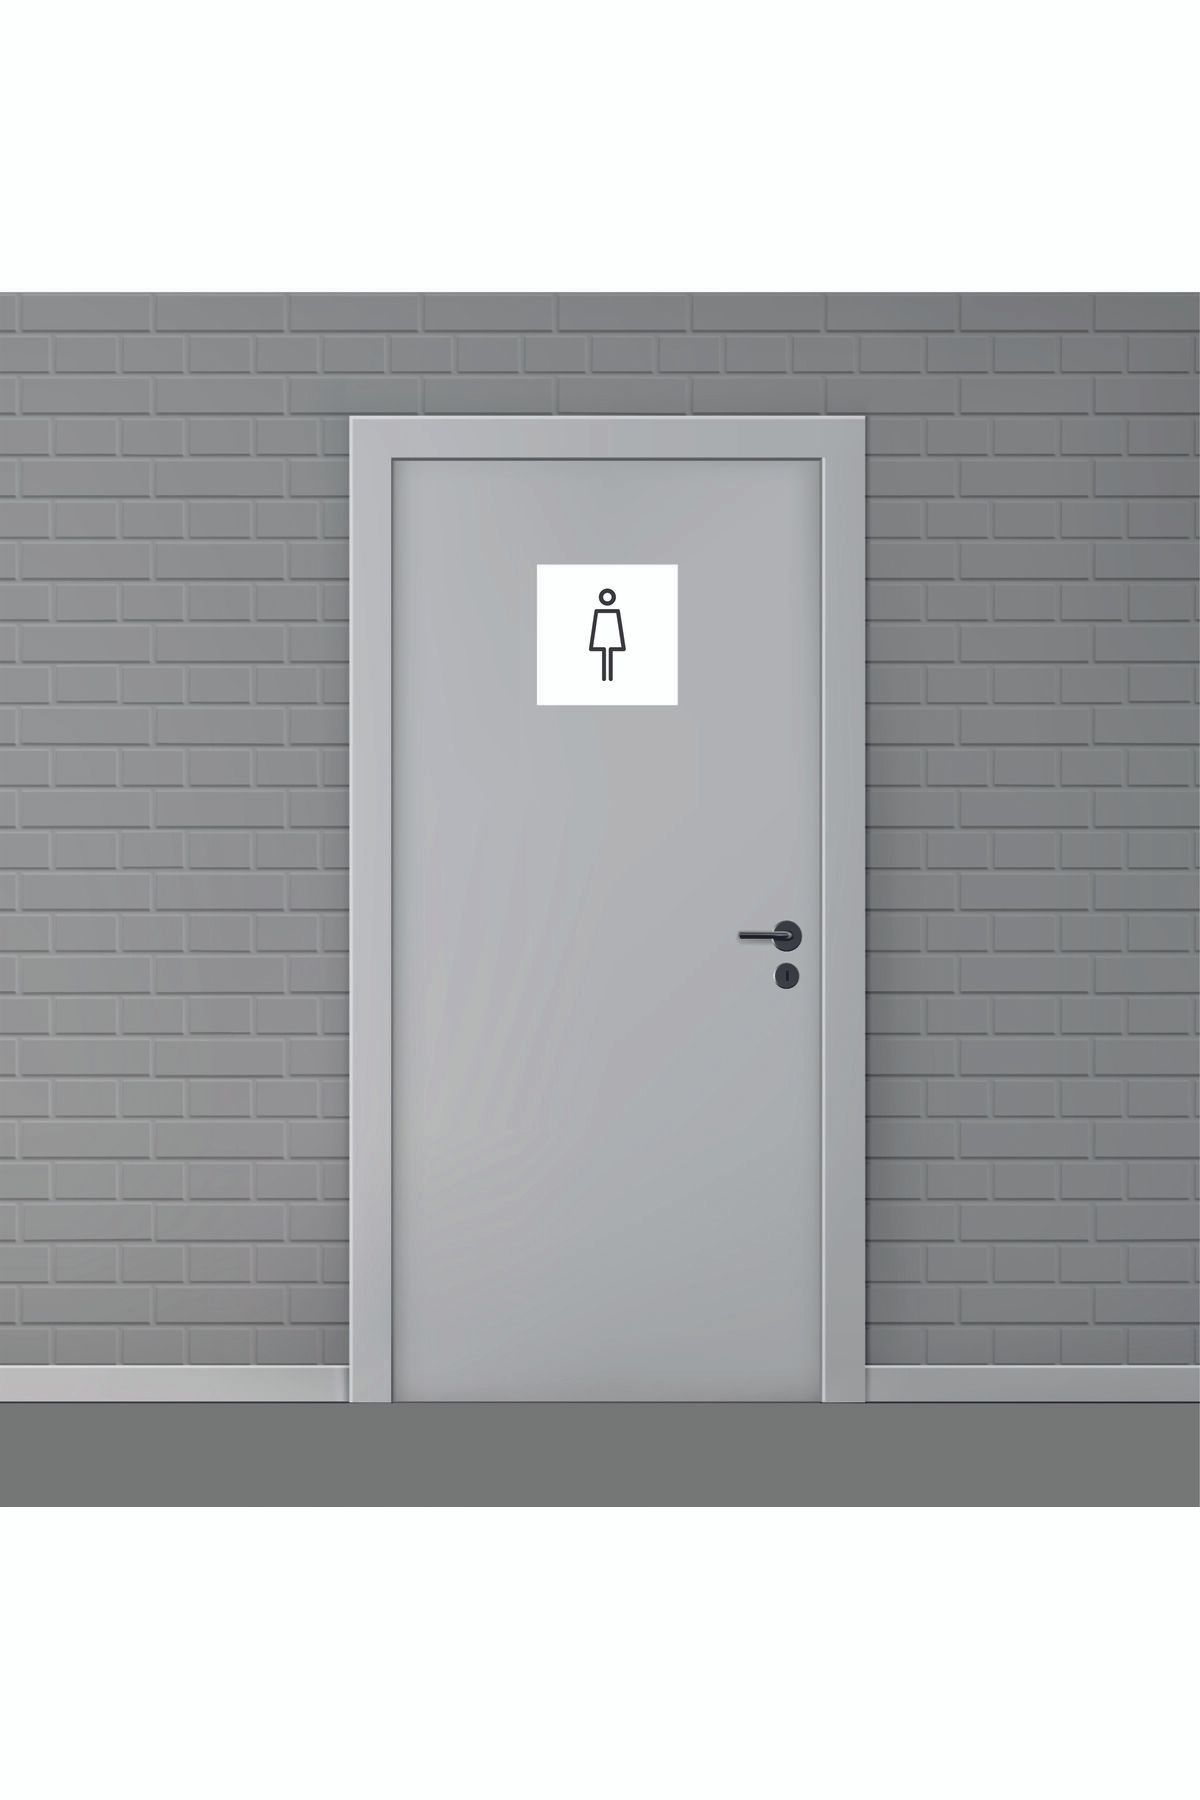 Ayhan Reklam Kadın Wc Tuvaleti Kapı Tabelası Dekota Foreks Kendinden Yapışkanlı Pictogram